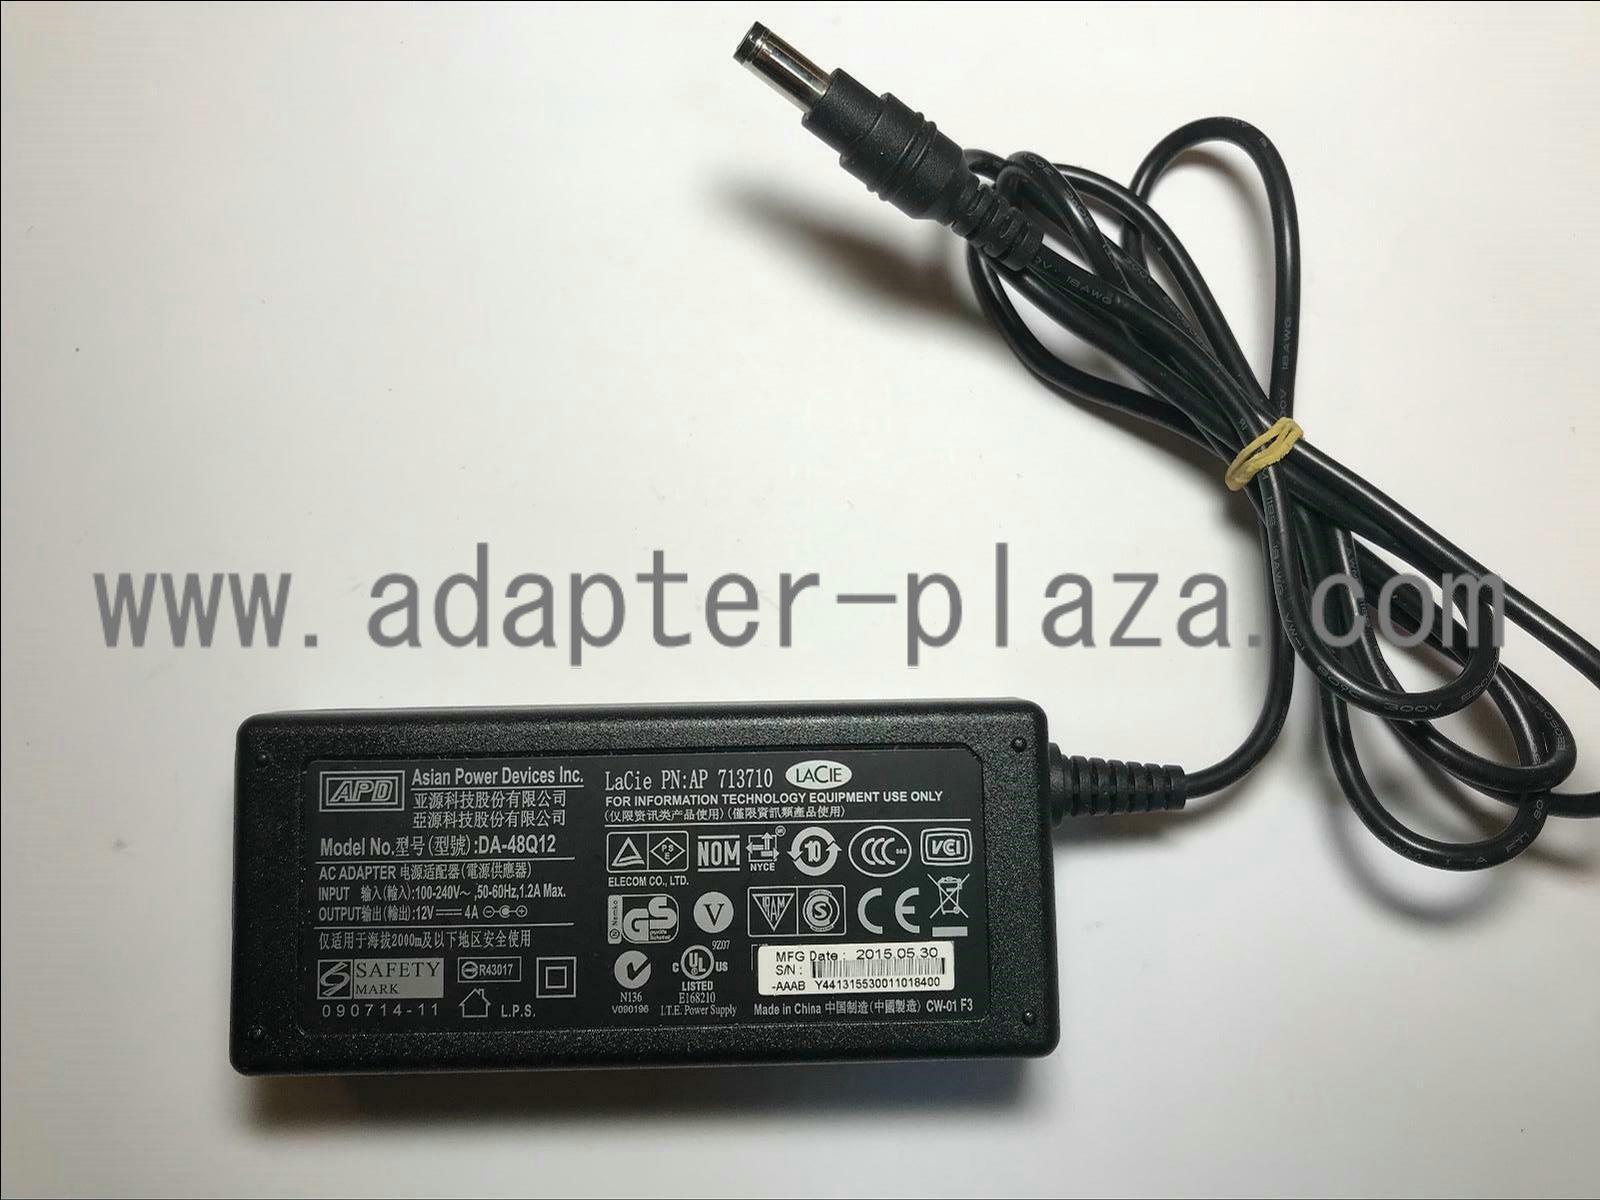 NEW Original APD 12V 4A DA-48Q12 AC Adapter for Lacie PN 713710 POWER DEVICES